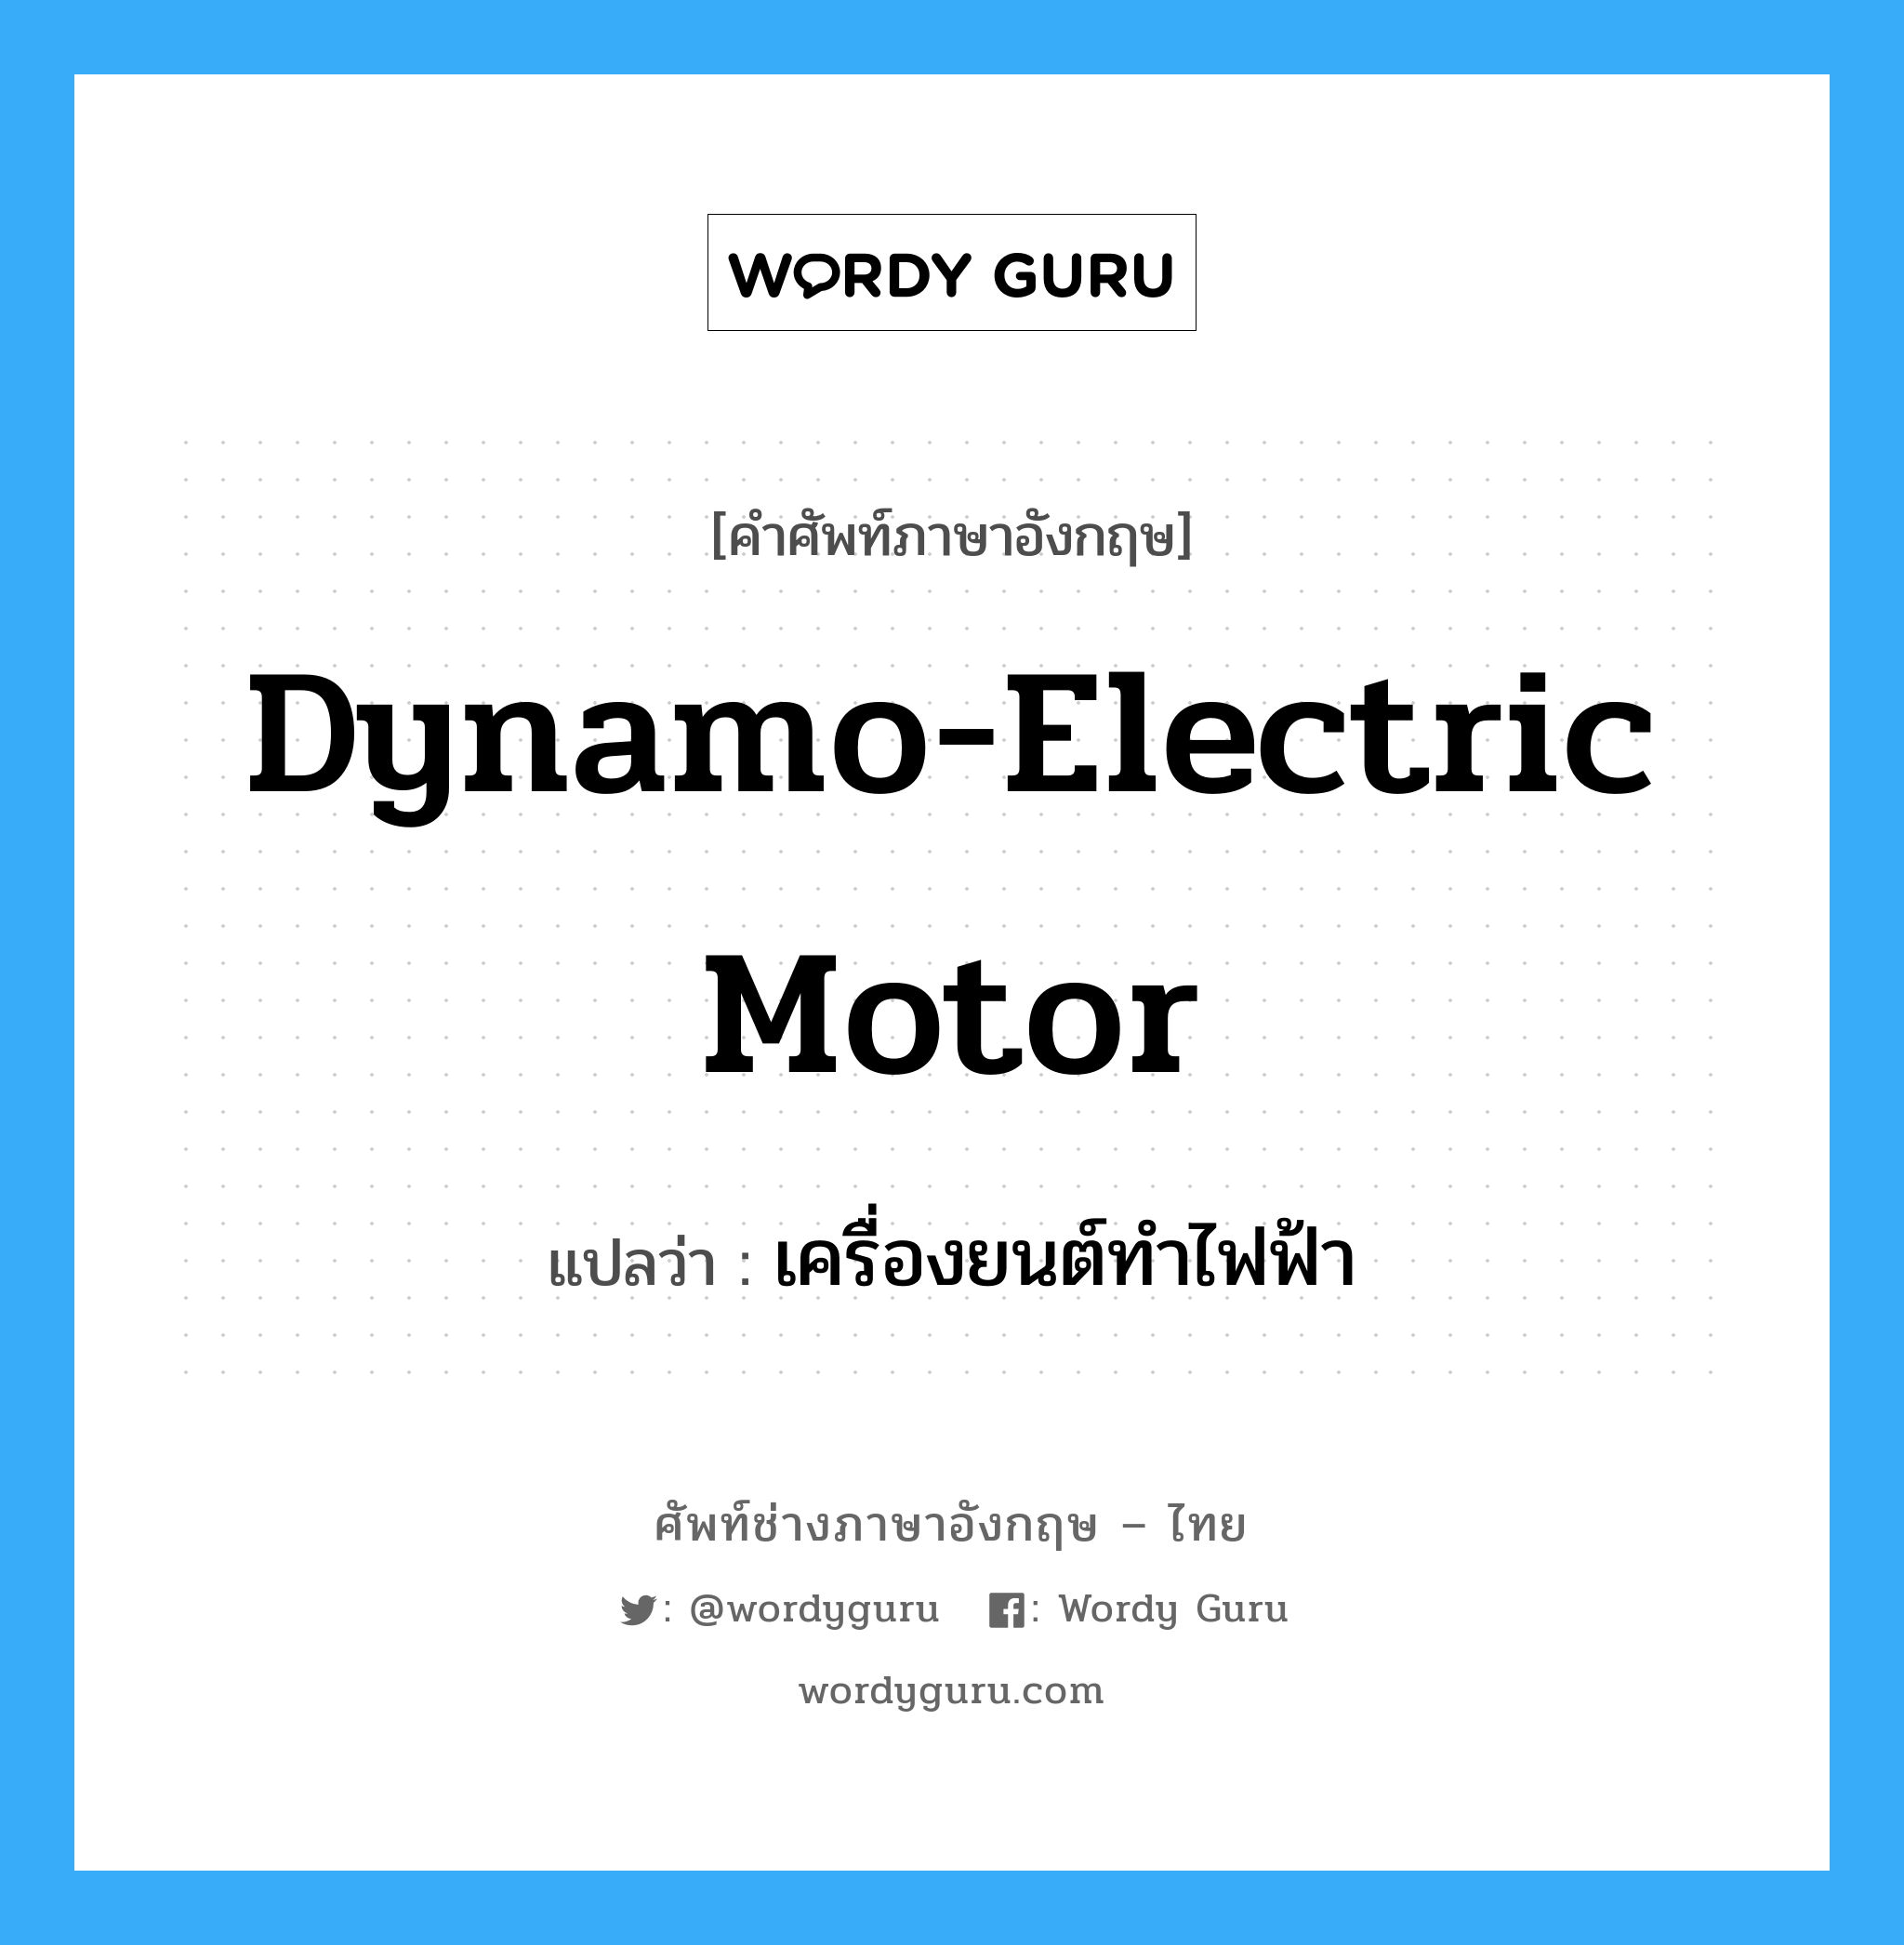 เครื่องยนต์ทำไฟฟ้า ภาษาอังกฤษ?, คำศัพท์ช่างภาษาอังกฤษ - ไทย เครื่องยนต์ทำไฟฟ้า คำศัพท์ภาษาอังกฤษ เครื่องยนต์ทำไฟฟ้า แปลว่า dynamo-electric motor